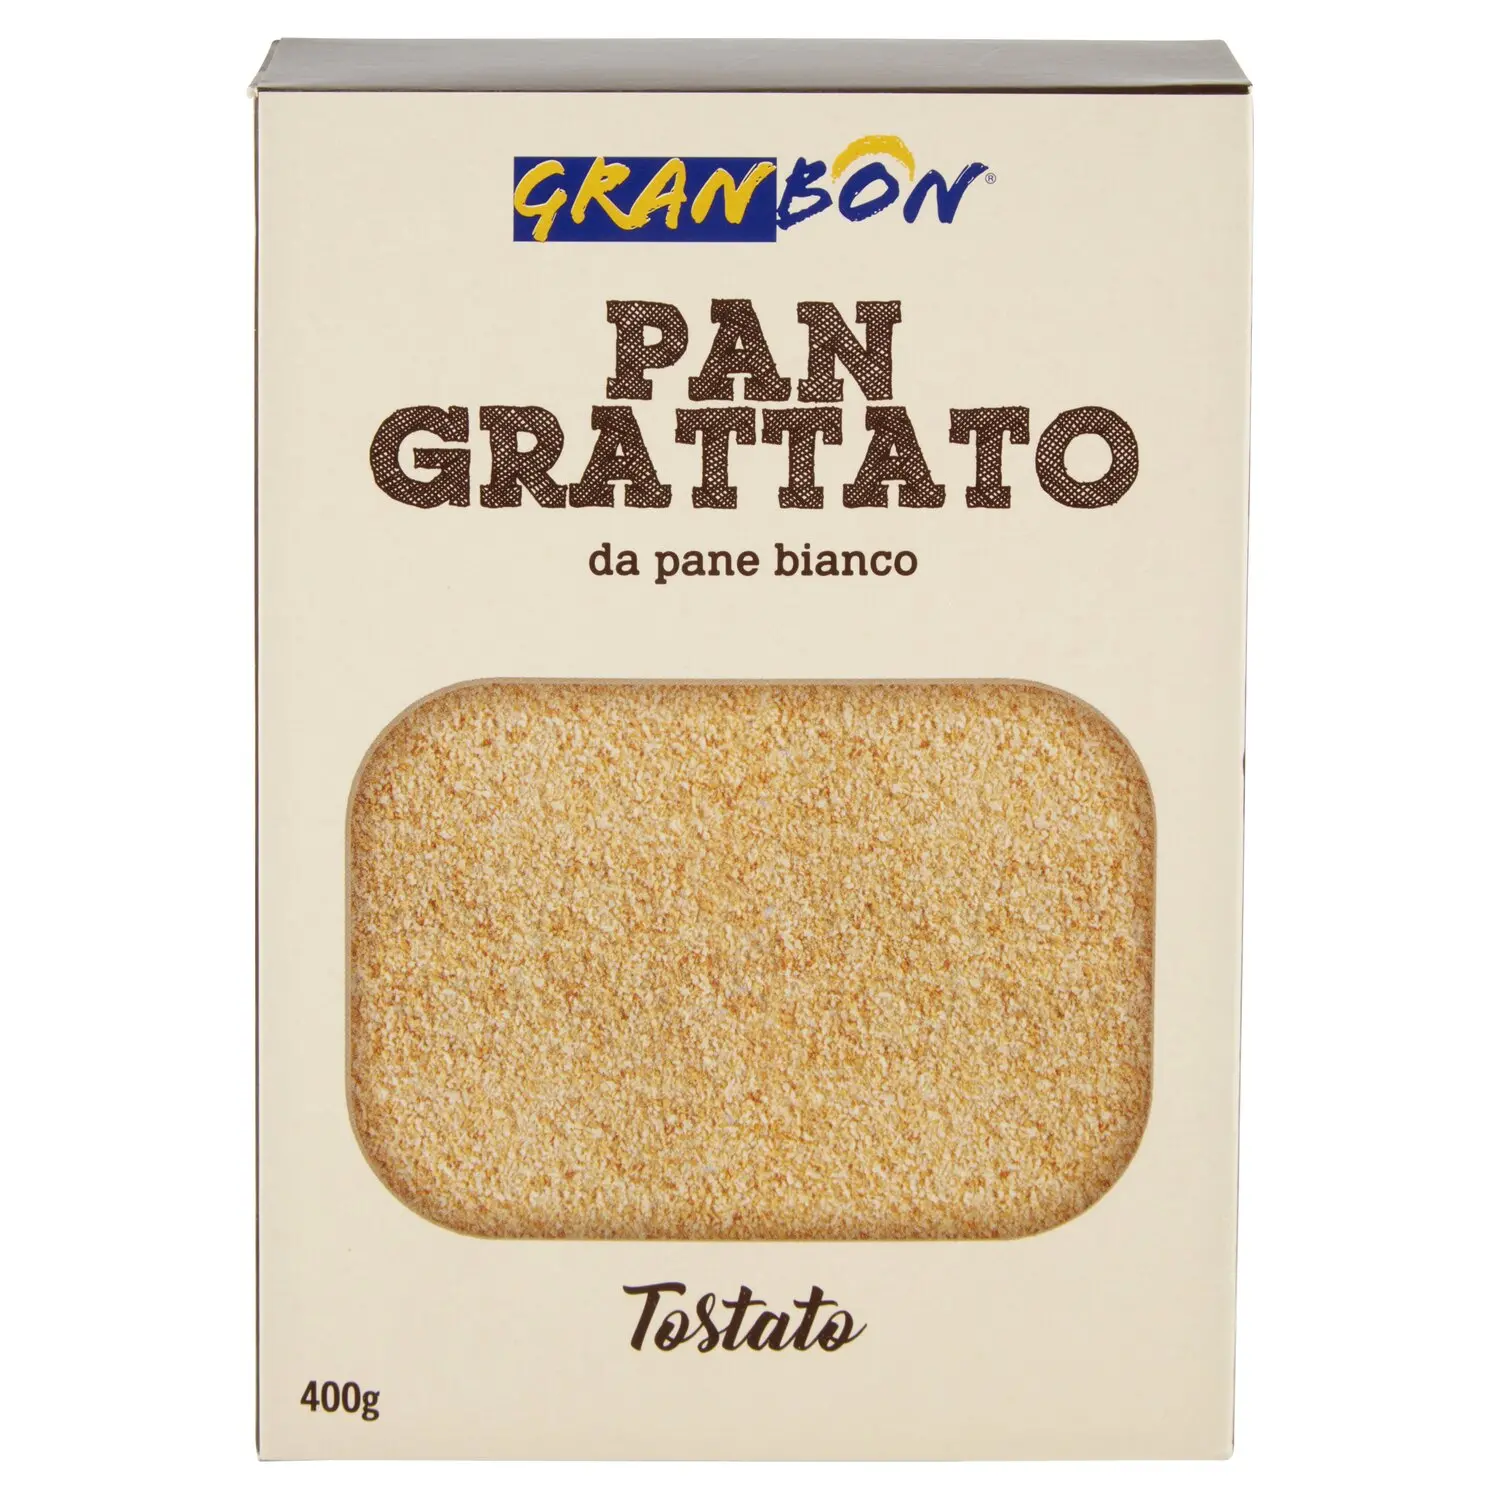 Granbon Pan Grattato da pane bianco Tostato 400 g